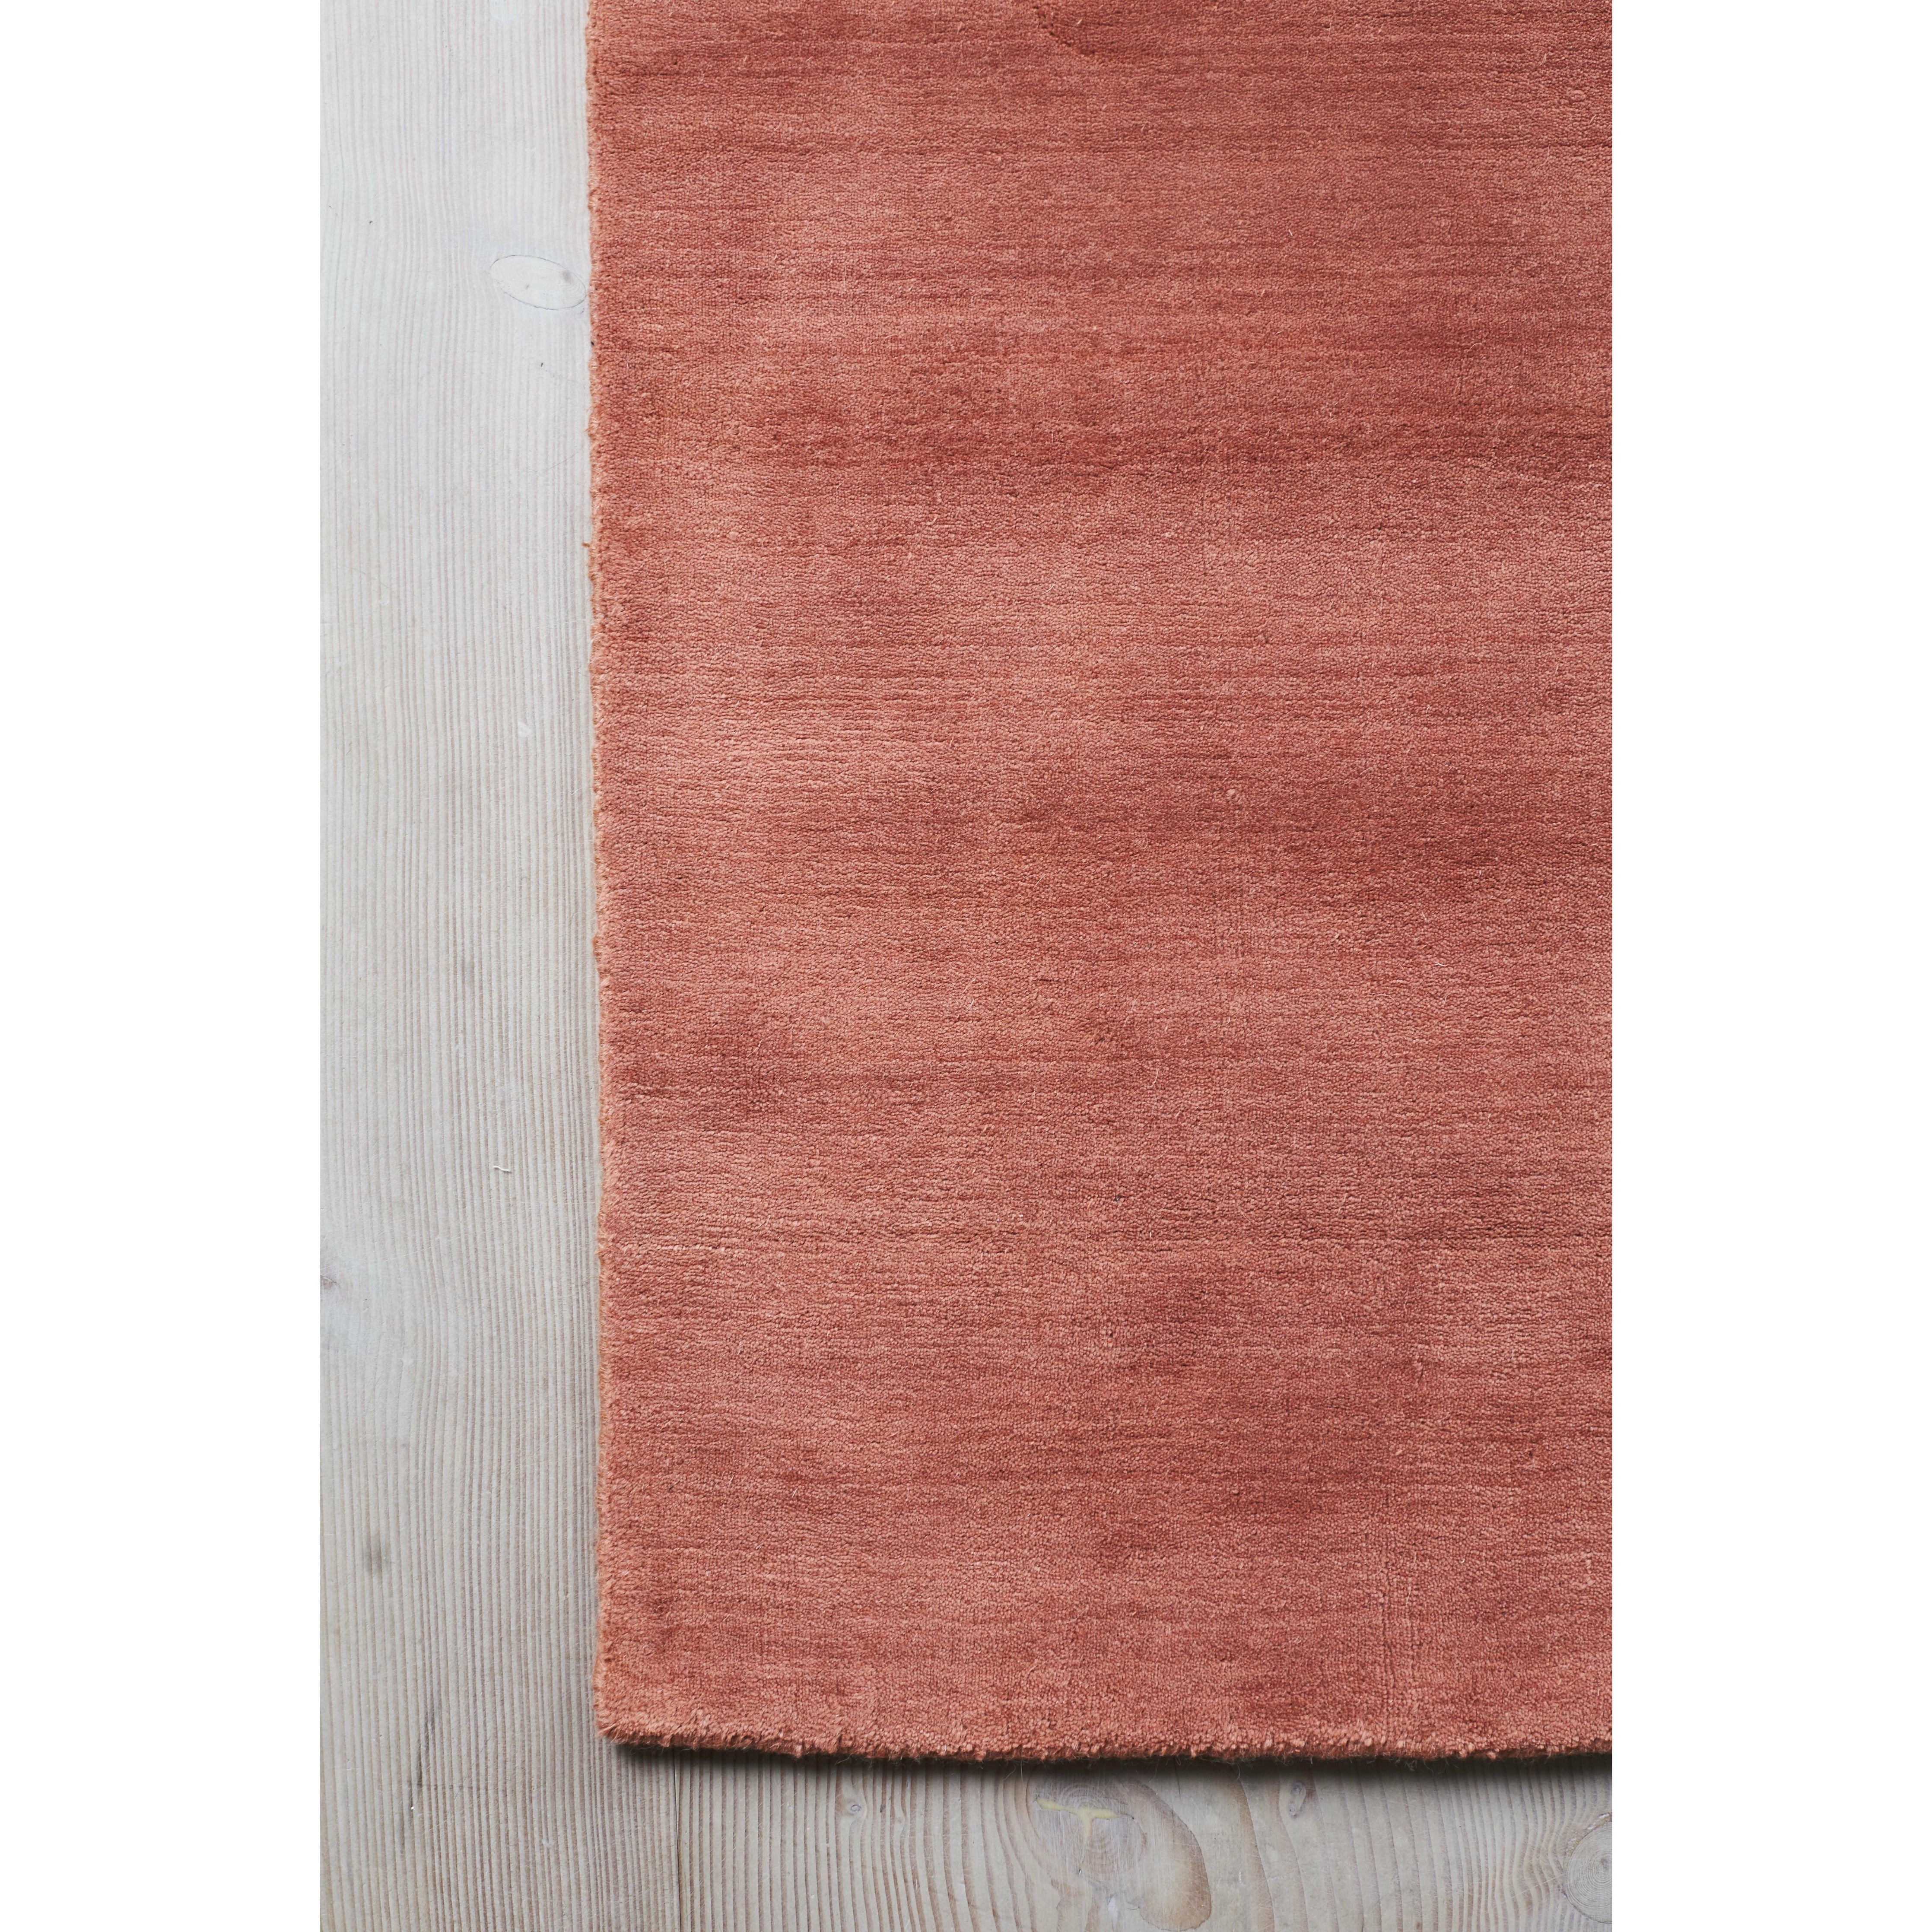 Massimo Jorden bambu matta terra cotta, 140x200 cm